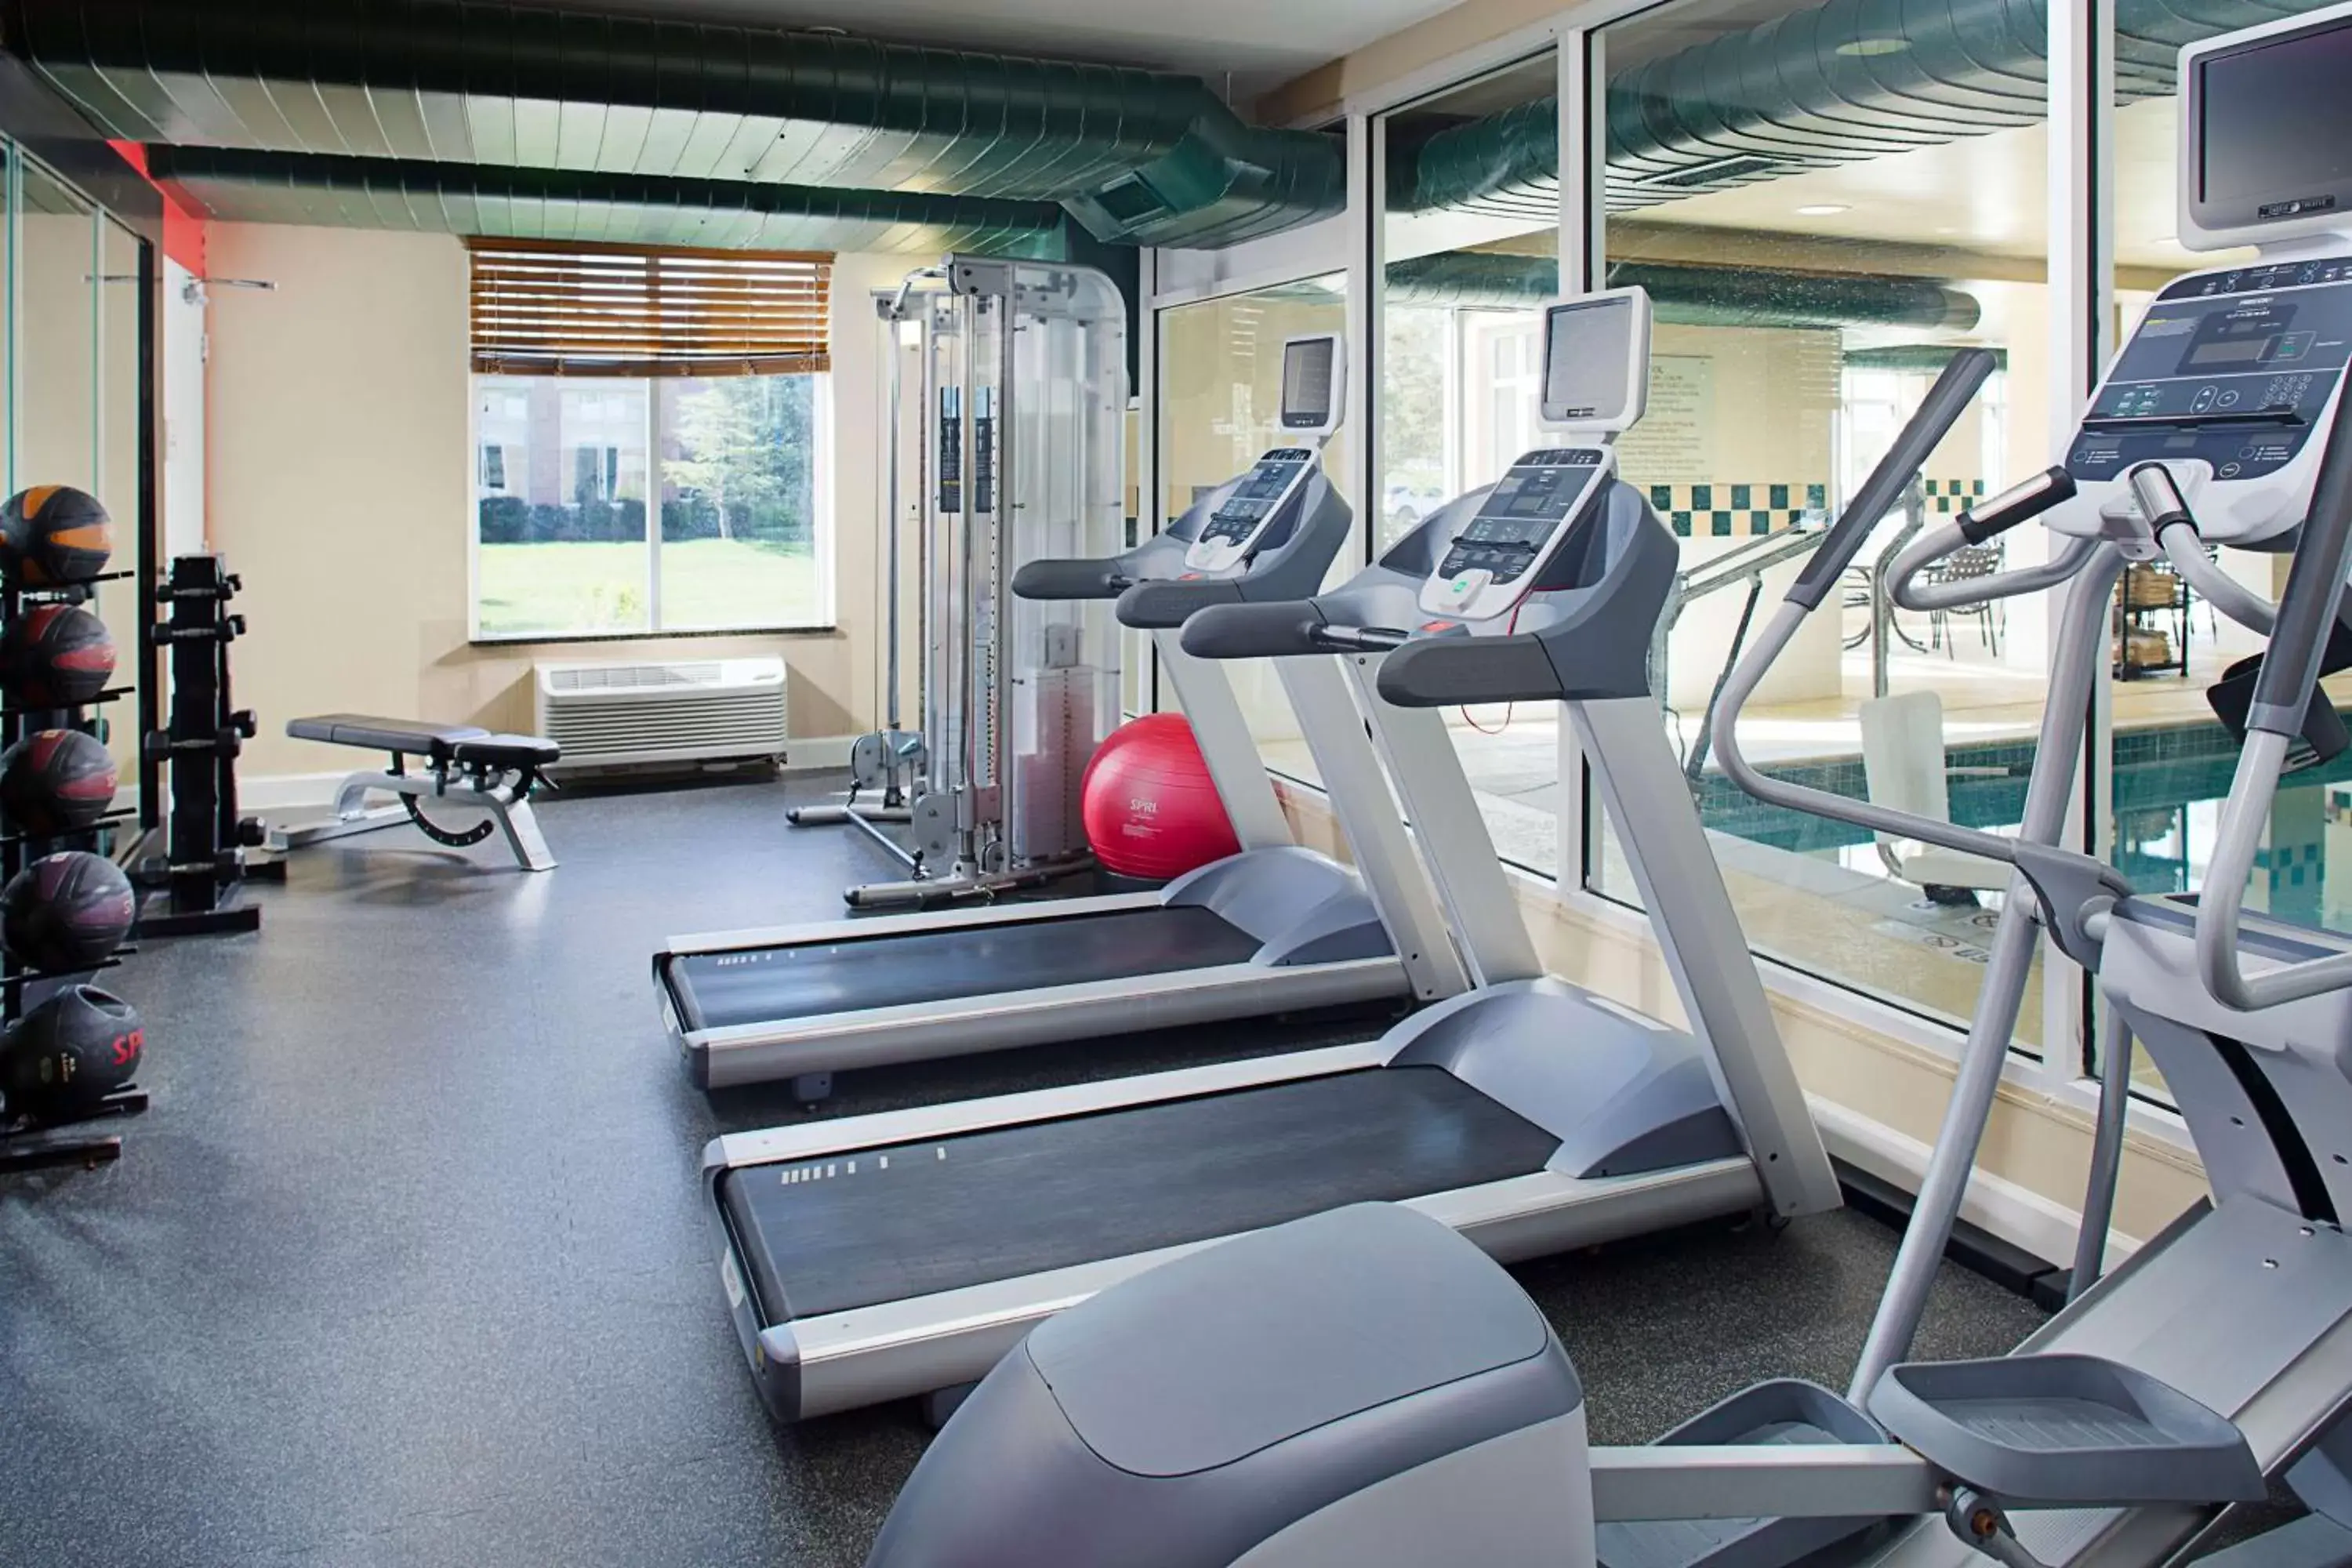 Fitness centre/facilities, Fitness Center/Facilities in Hilton Garden Inn Colorado Springs